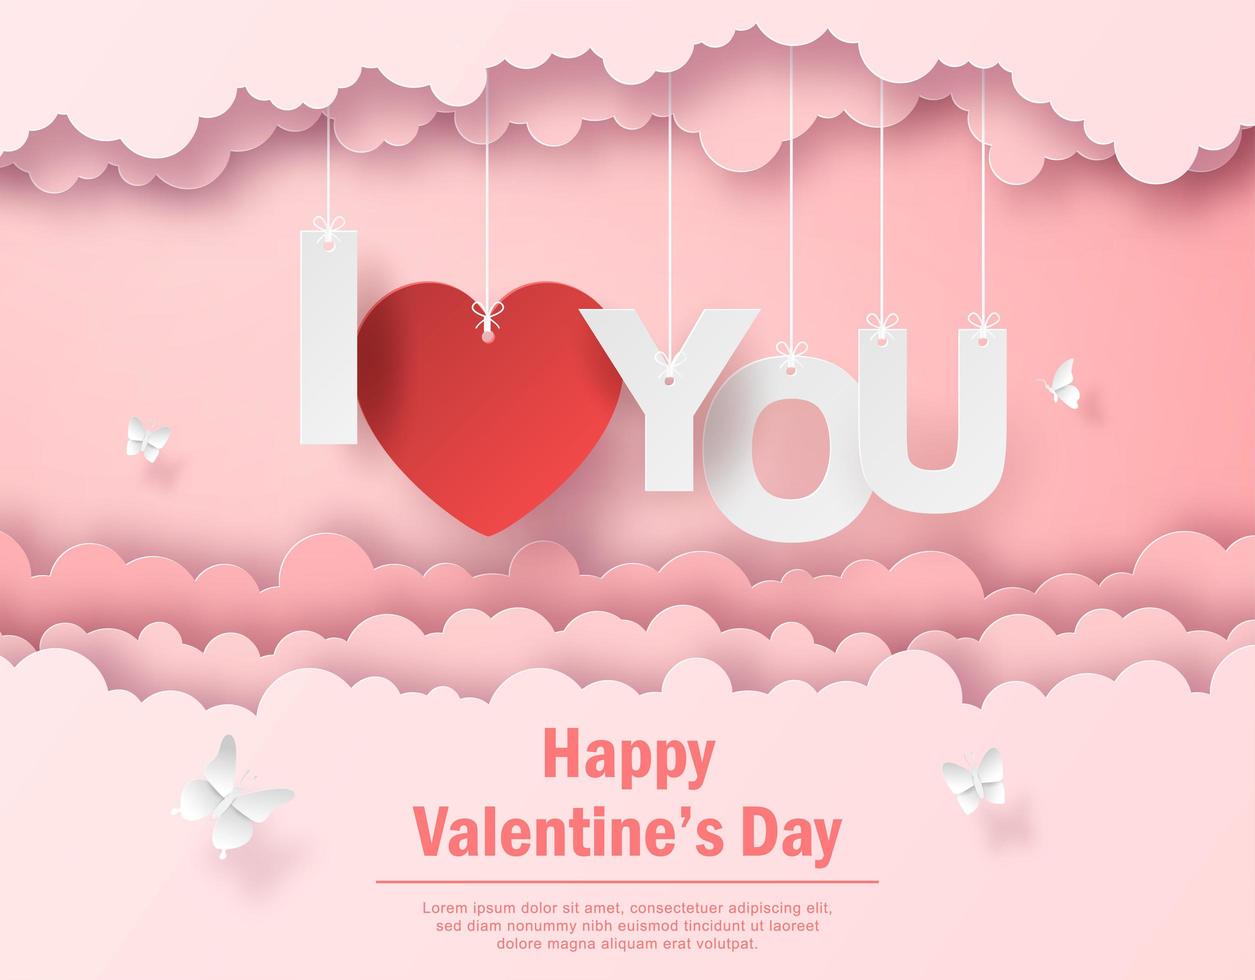 Valentinstagspostkarte des hängenden Textes Ich liebe dich am Himmel, glücklicher Valentinstag vektor